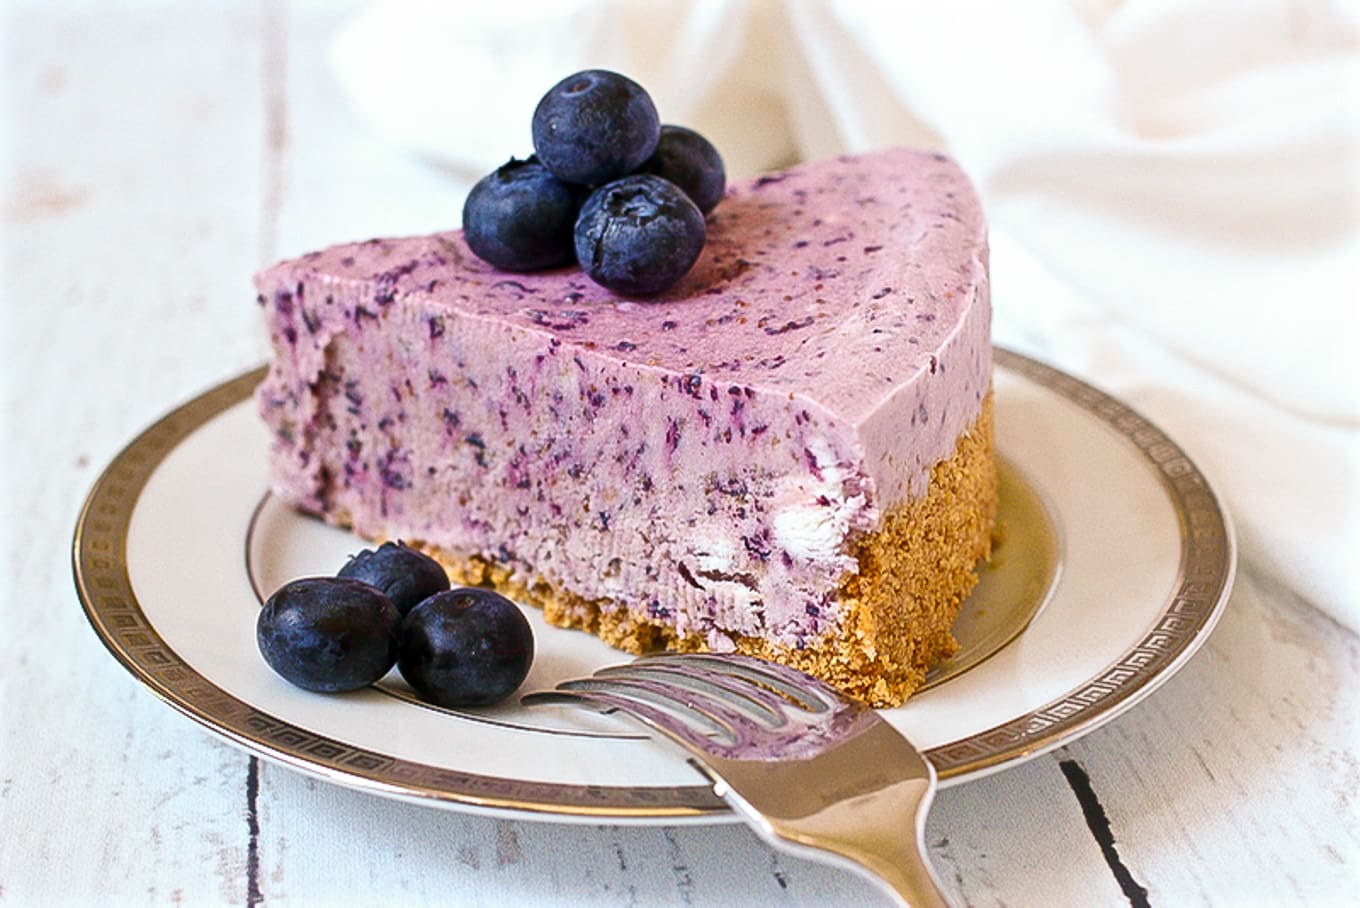 No-bake frozen blueberry pie - a super creamy summer dessert! | FamilyFoodontheTable.com